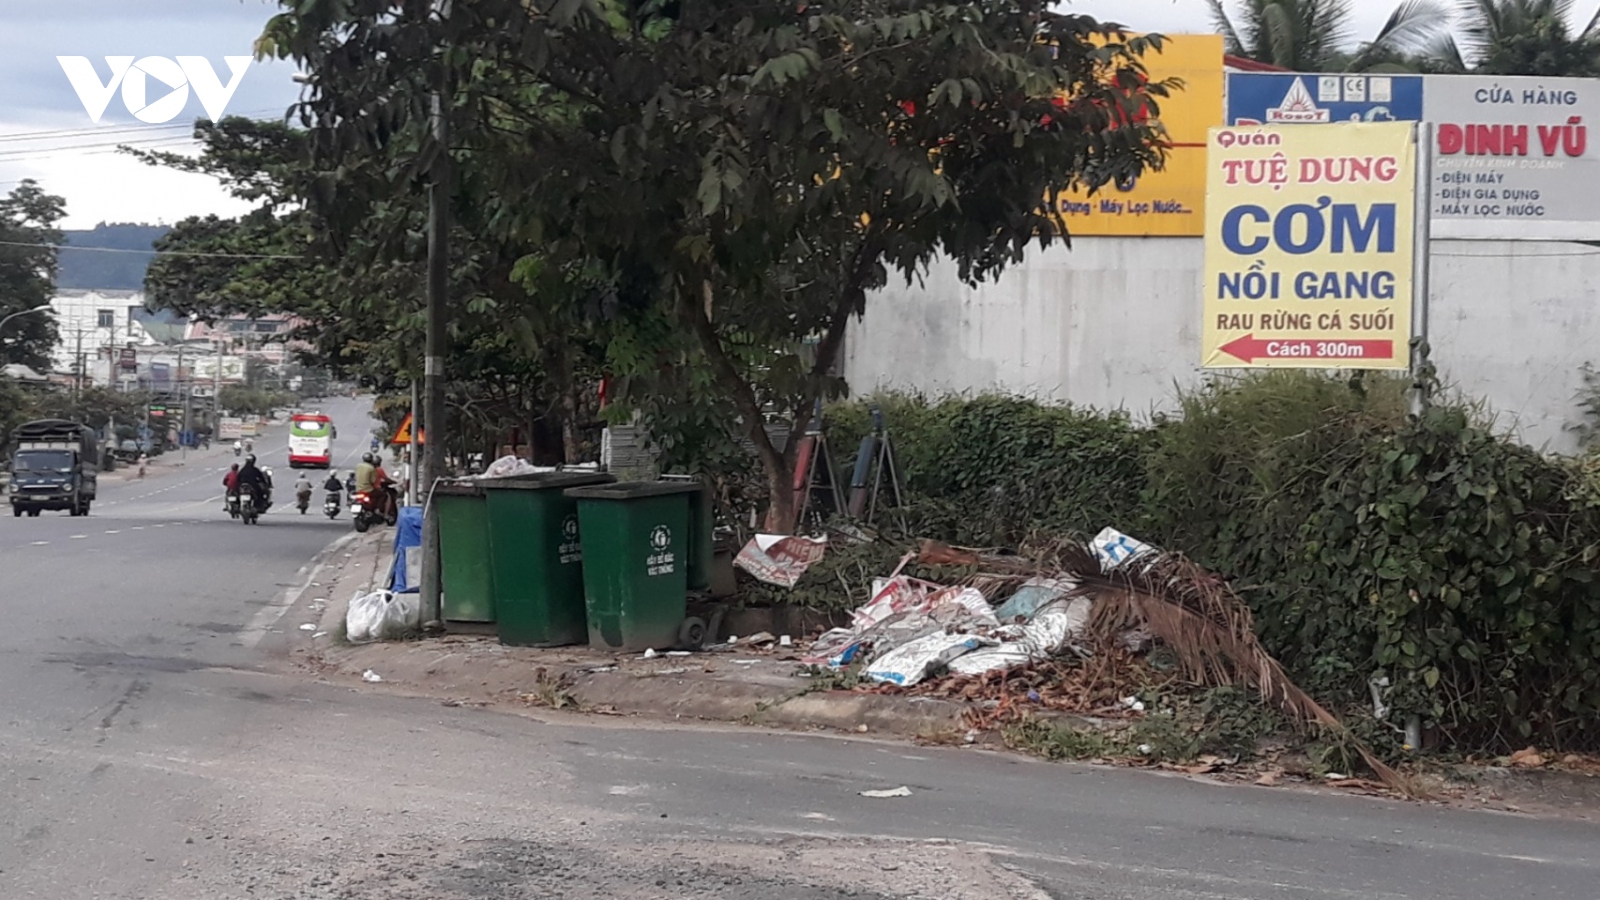 Lâm Đồng: Nhà máy xử lý chậm tiến độ khiến rác ngập tràn khu dân cư